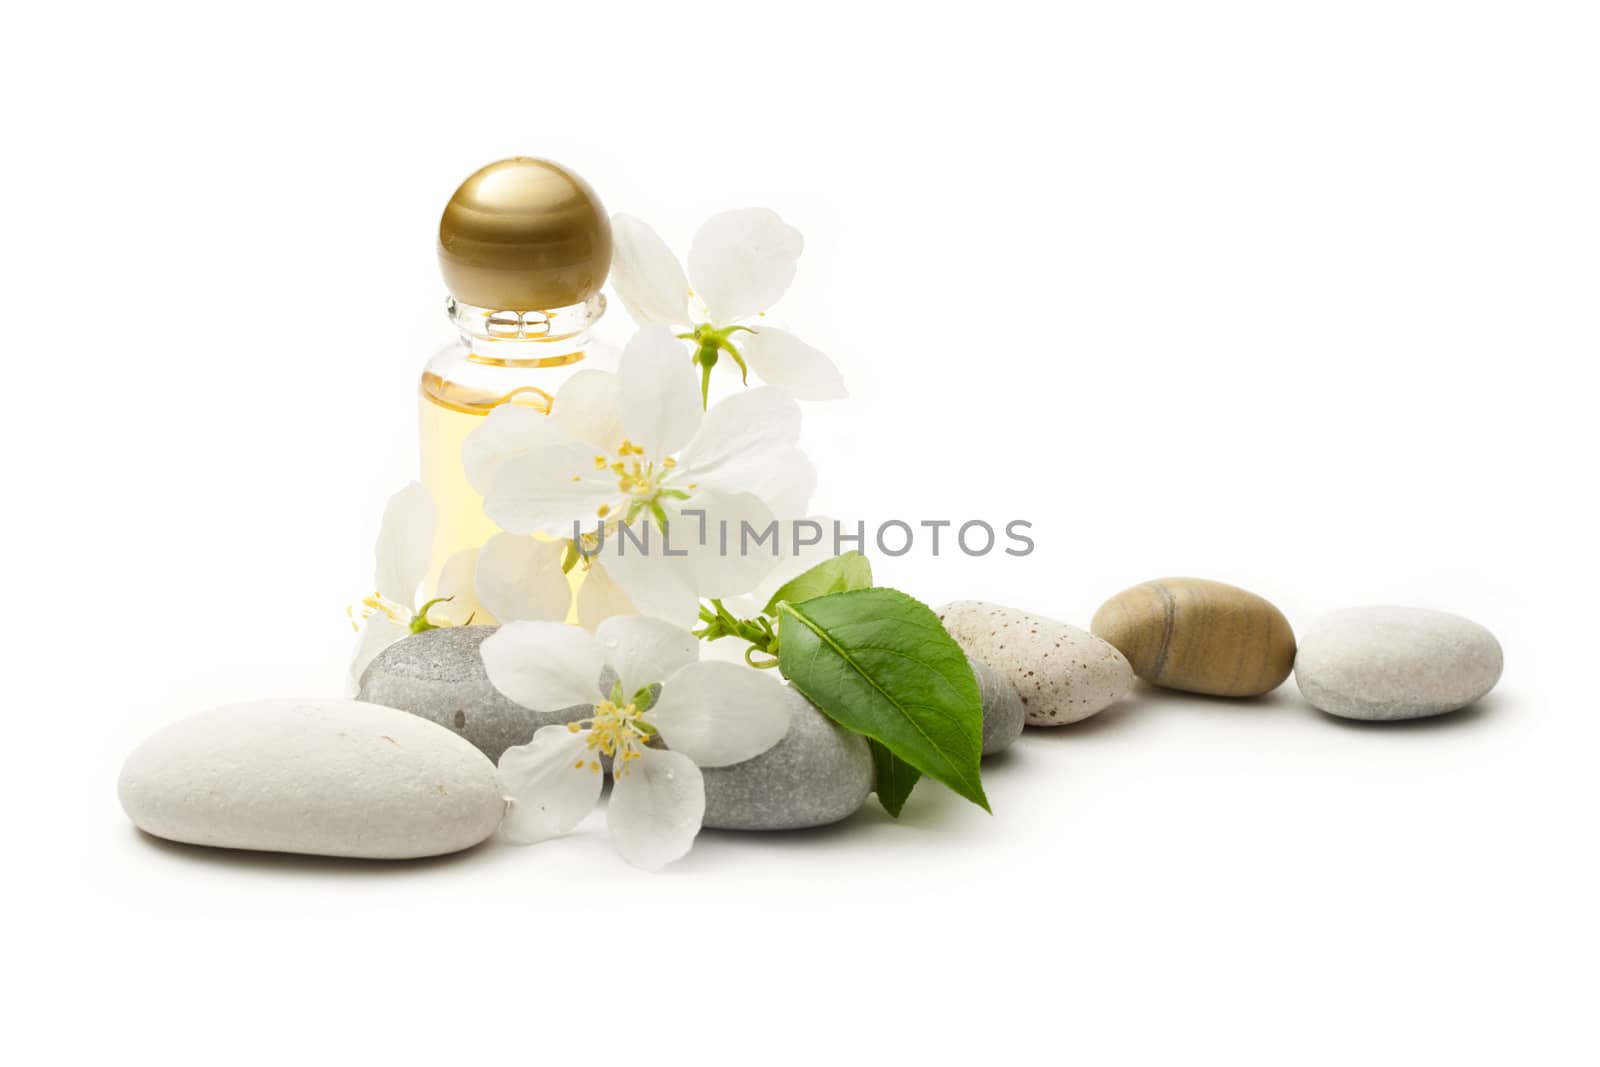 Apple tree flowers, stones and shampoo